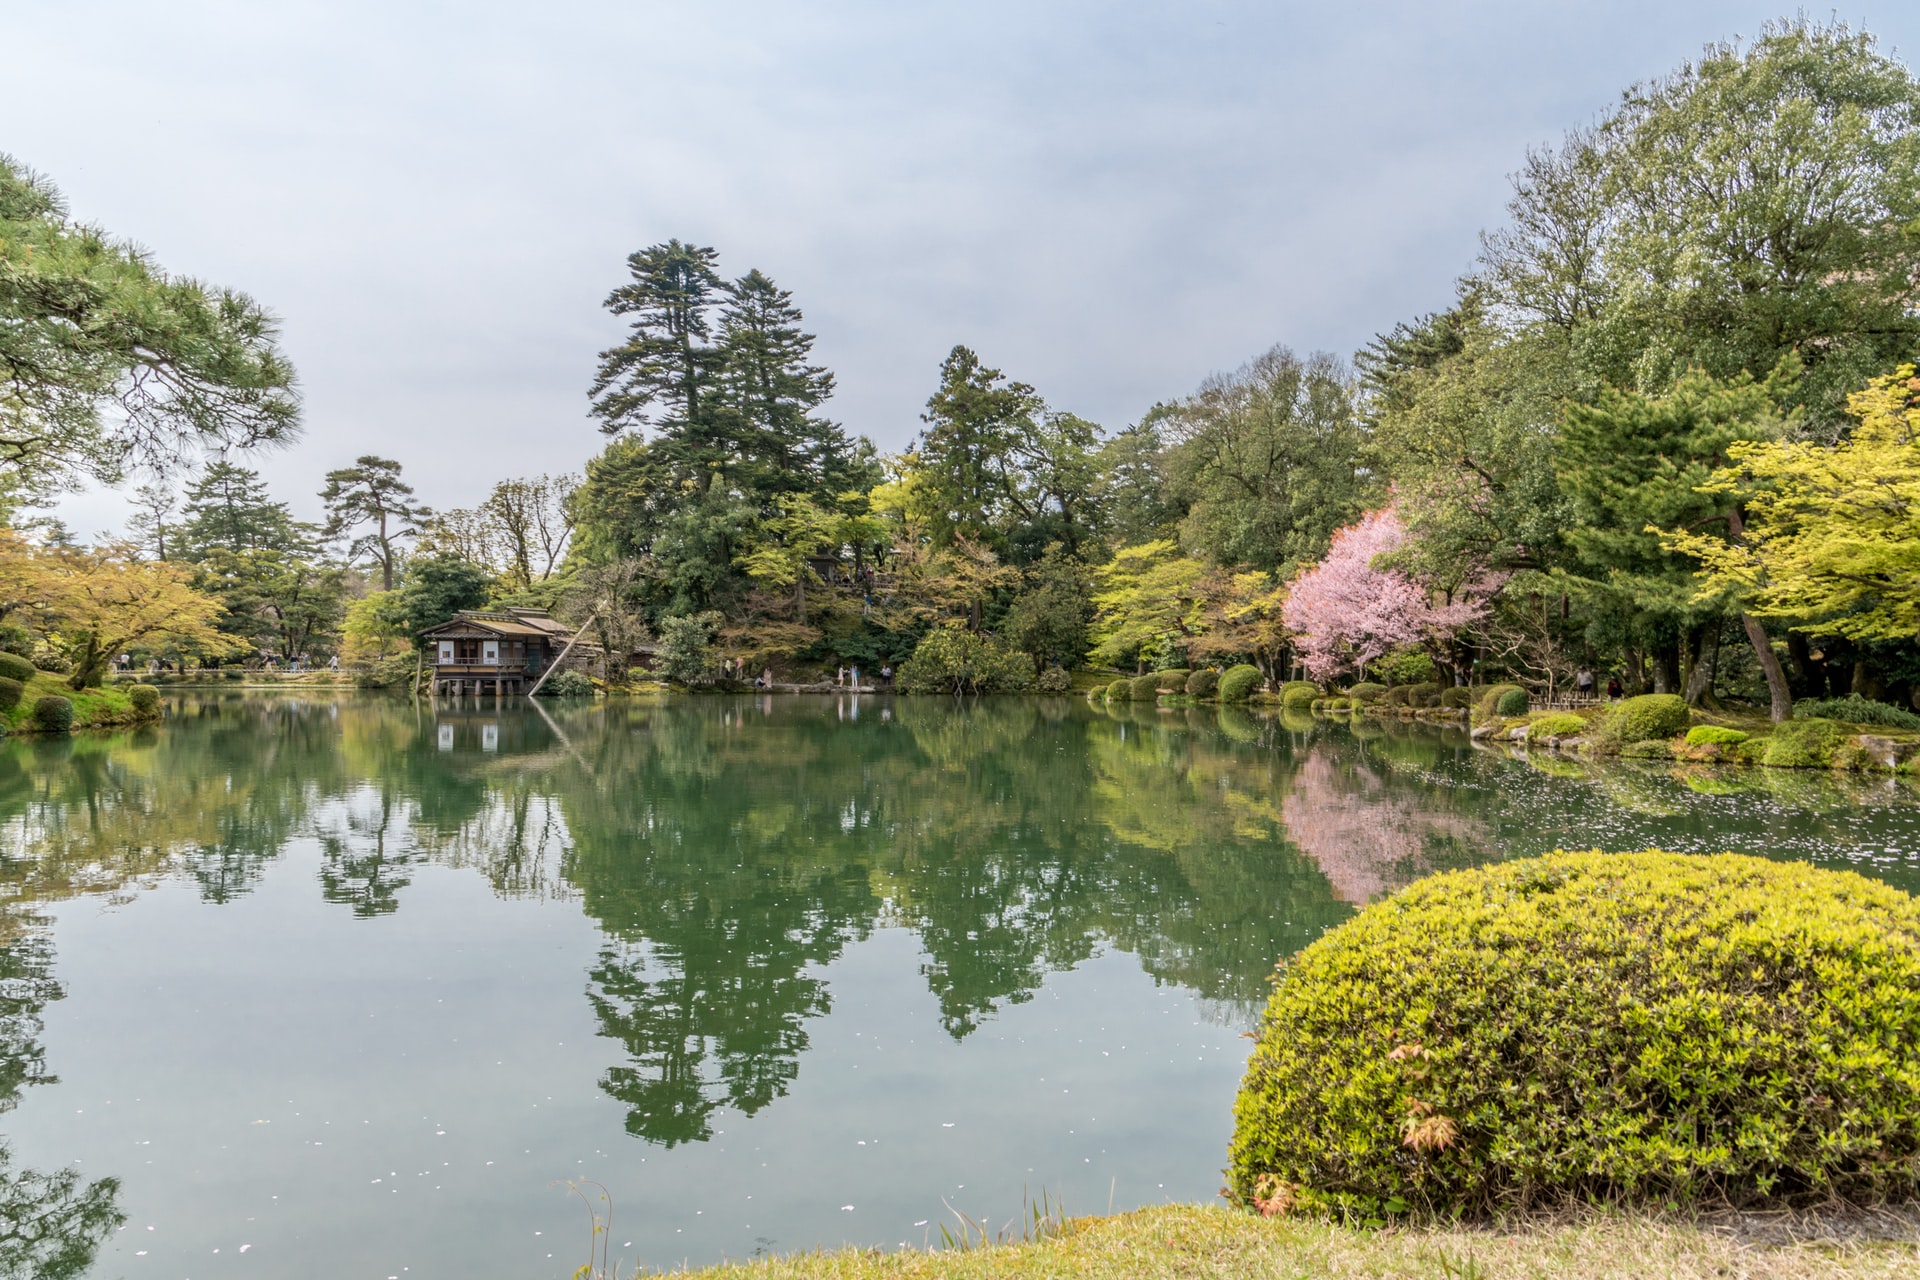 Jardín Kenrokuen